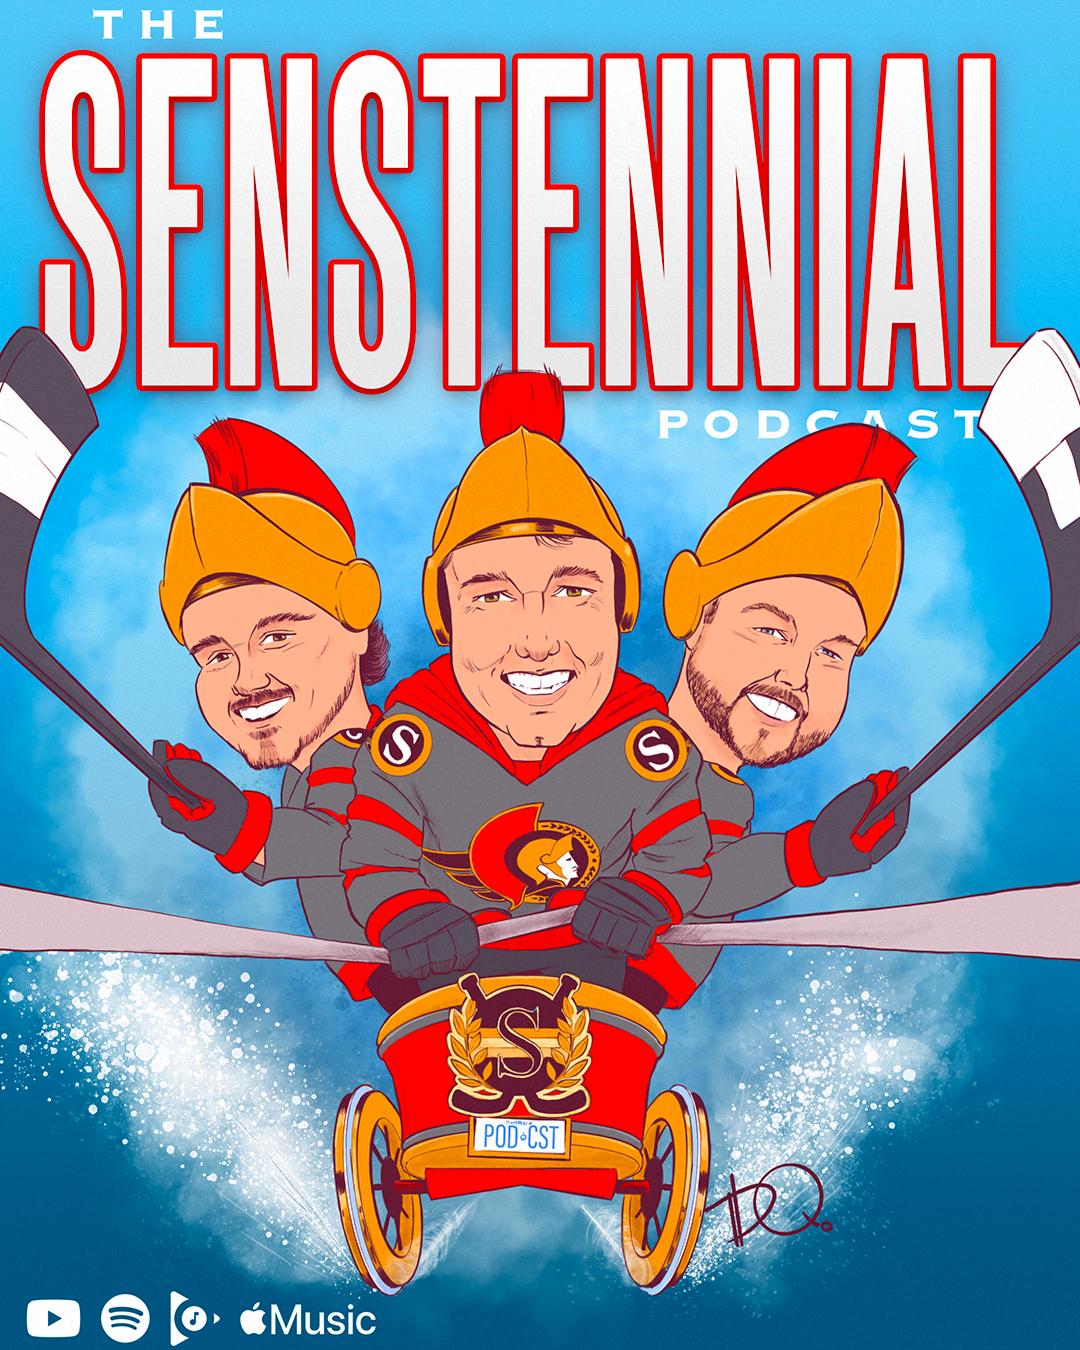  The Senstennial Podcast